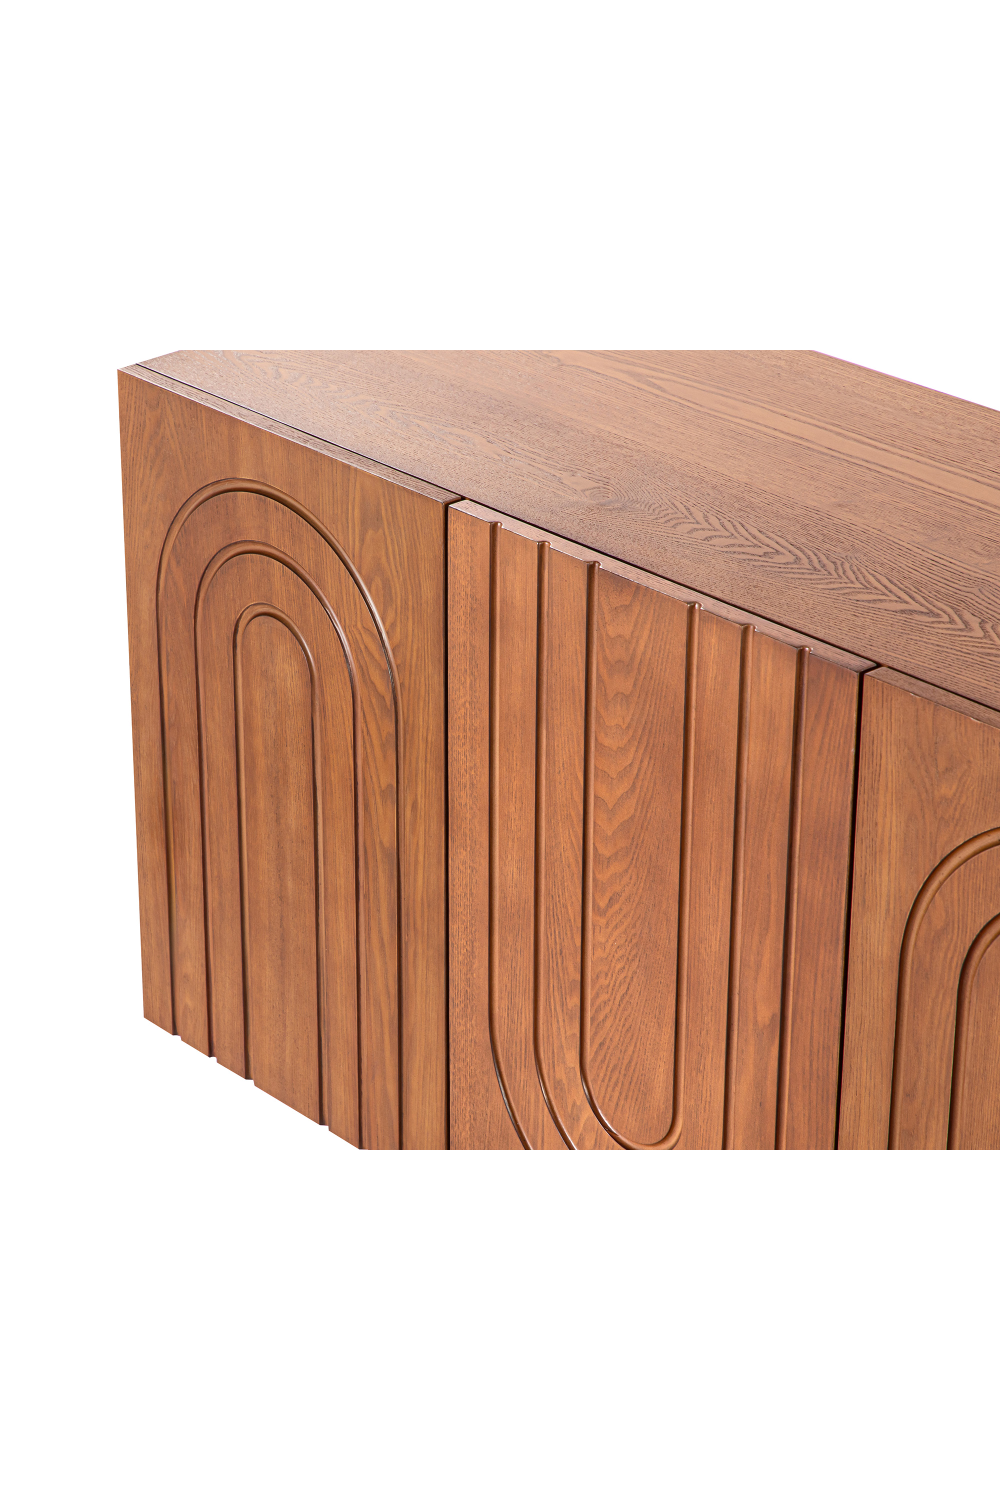 Ash Wood Veneer Sideboard | Liang & Eimil Origin | Oroa.com